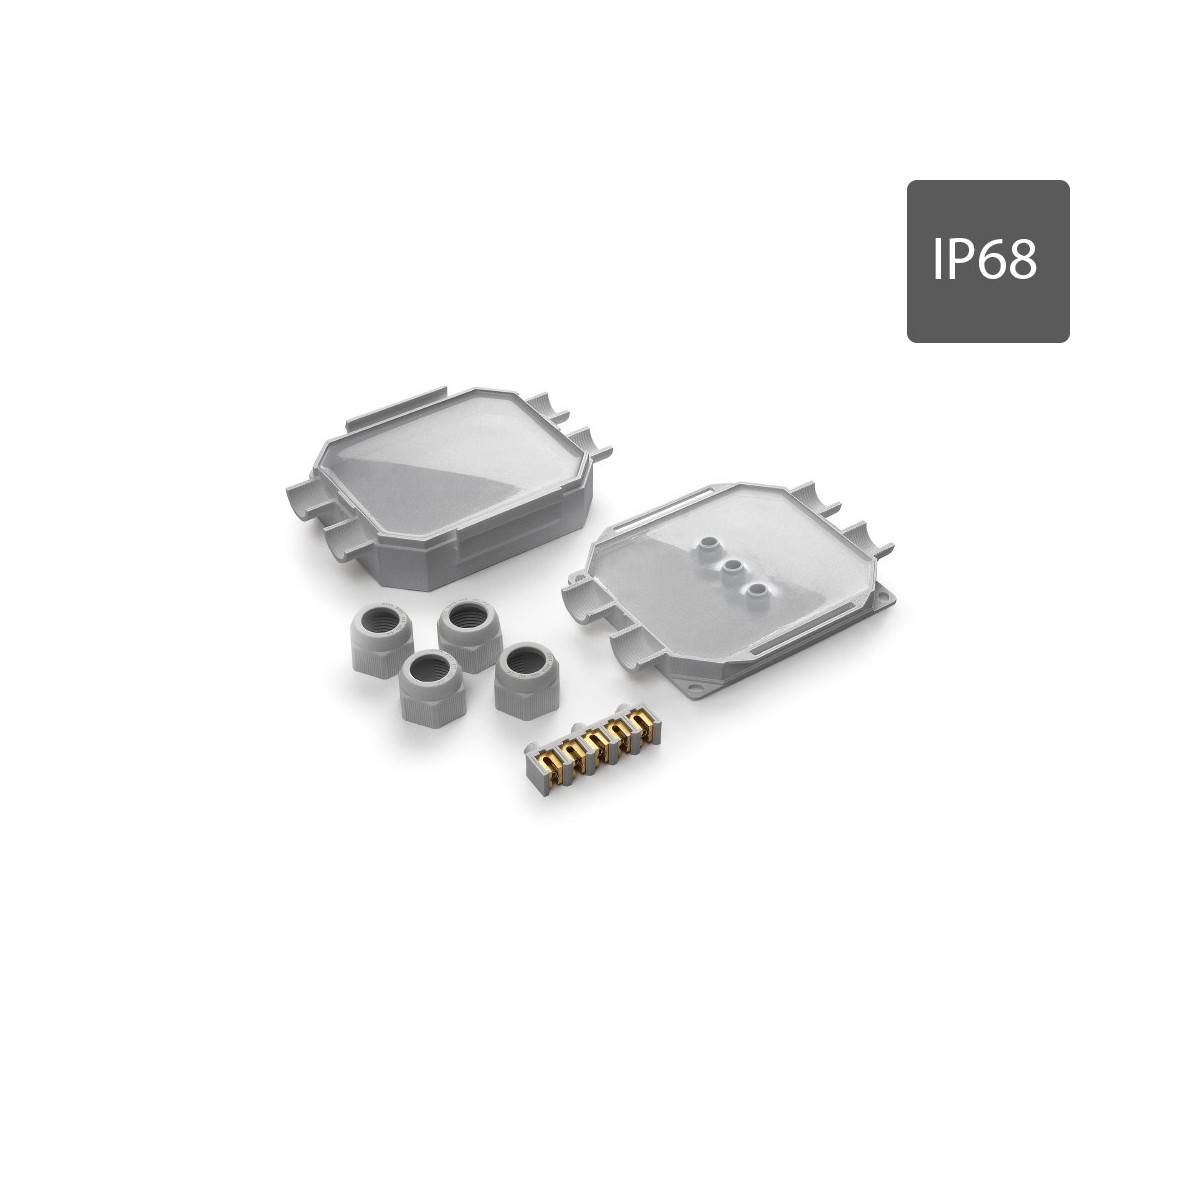 Caixa de ligações estanque Readybox 120 com gel isolante integrado IP68 com 5 conectores 6MM2